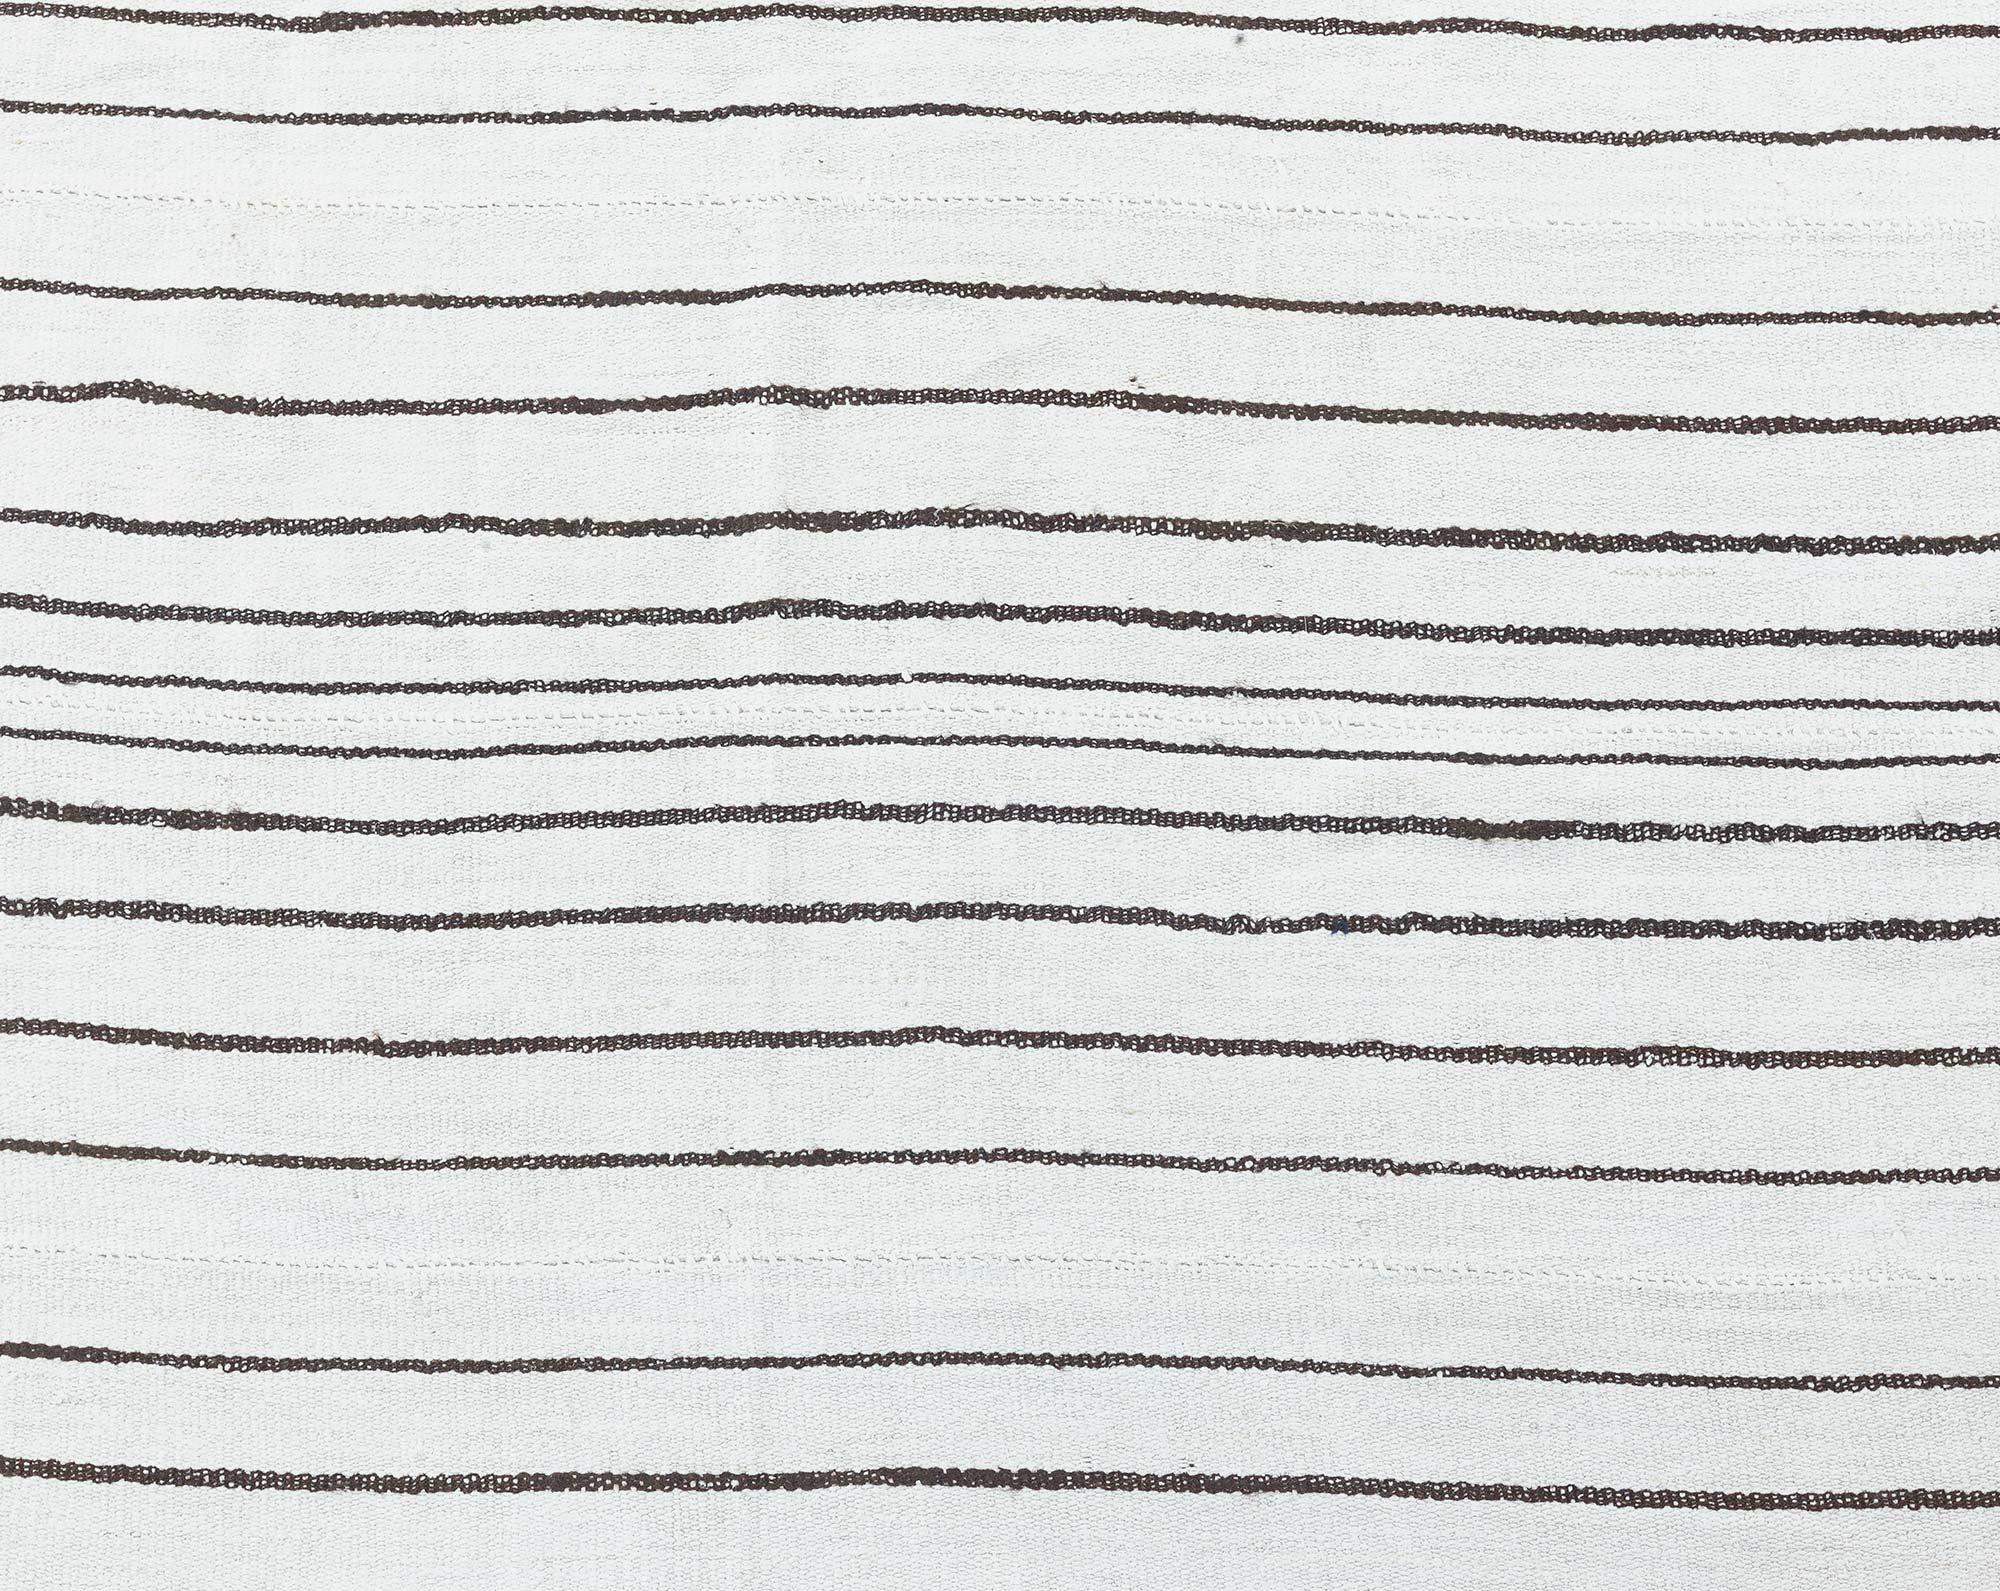 Vintage Turkish Kilim composition striped rug.
Size: 15'2